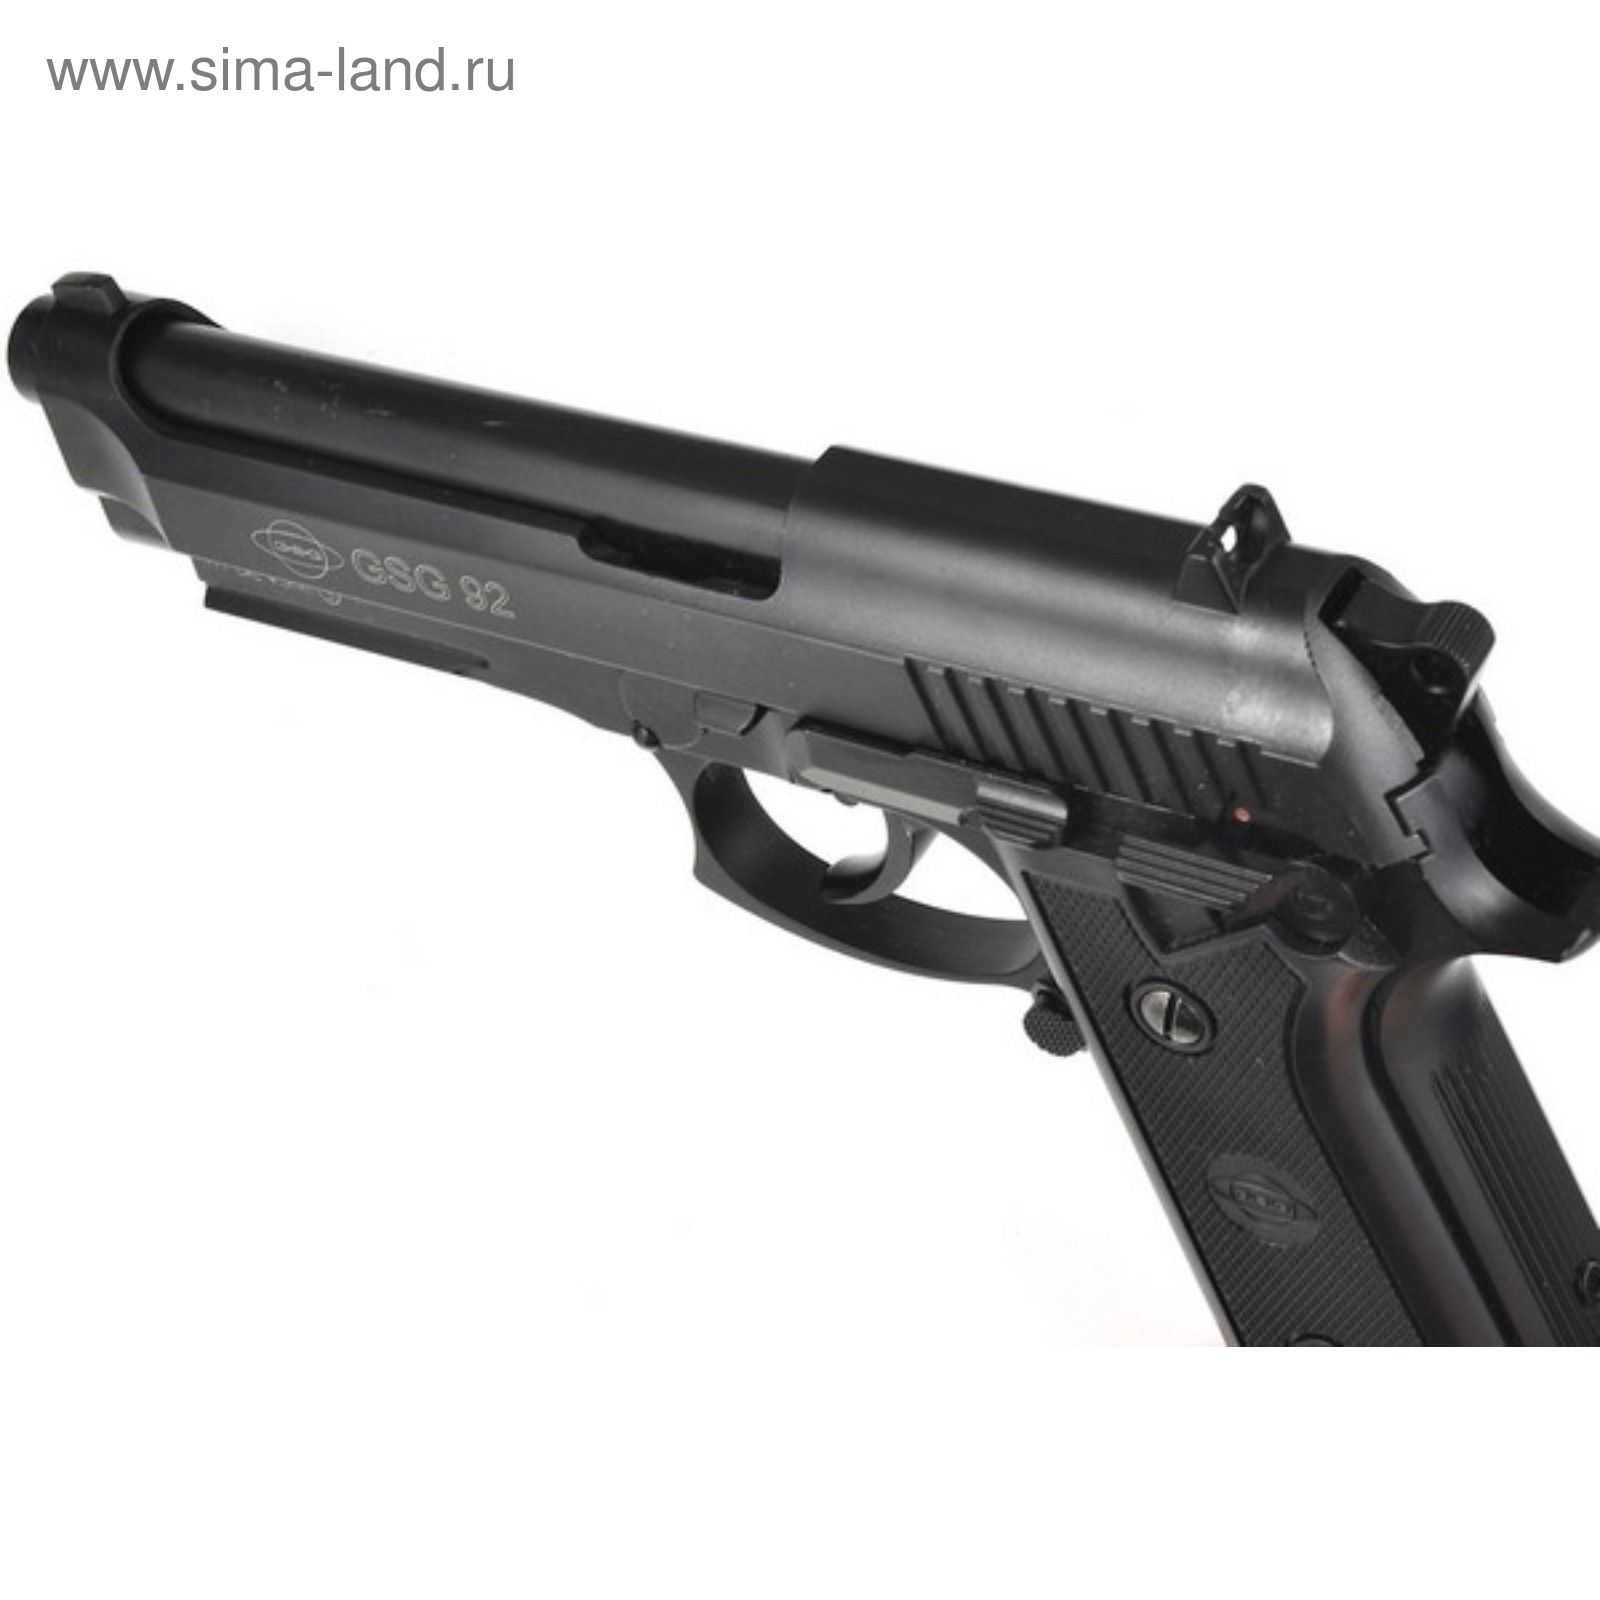 Пистолет пневматический GSG-92 (Beretta 92), к.4,5 мм, металл, блоубэк, черный, 95 м/с